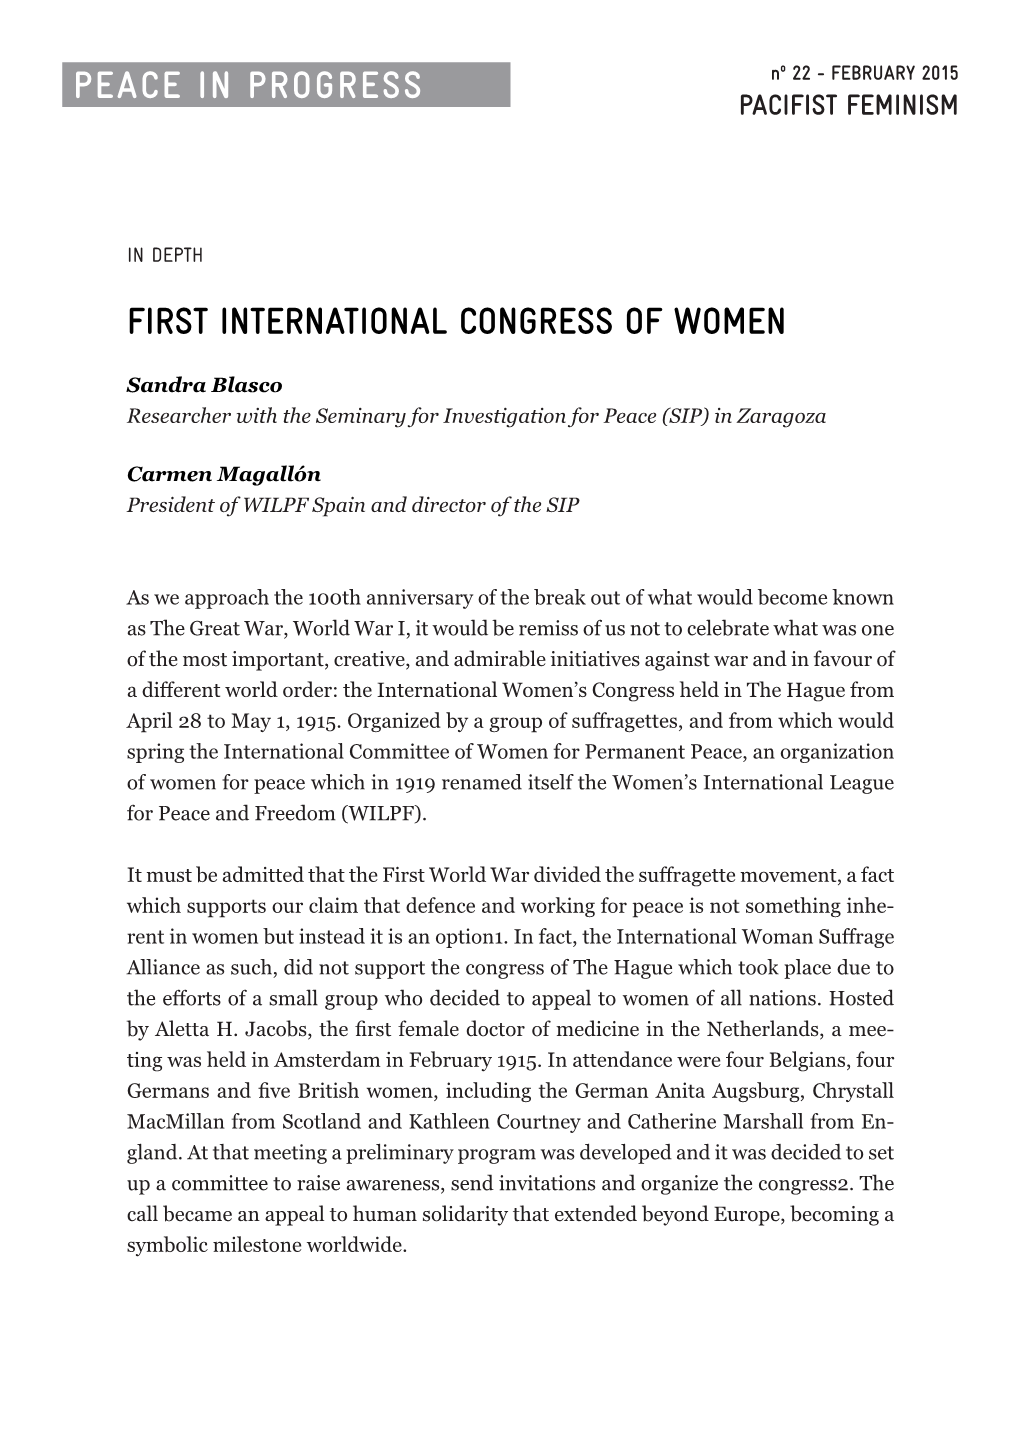 First International Congress of Women